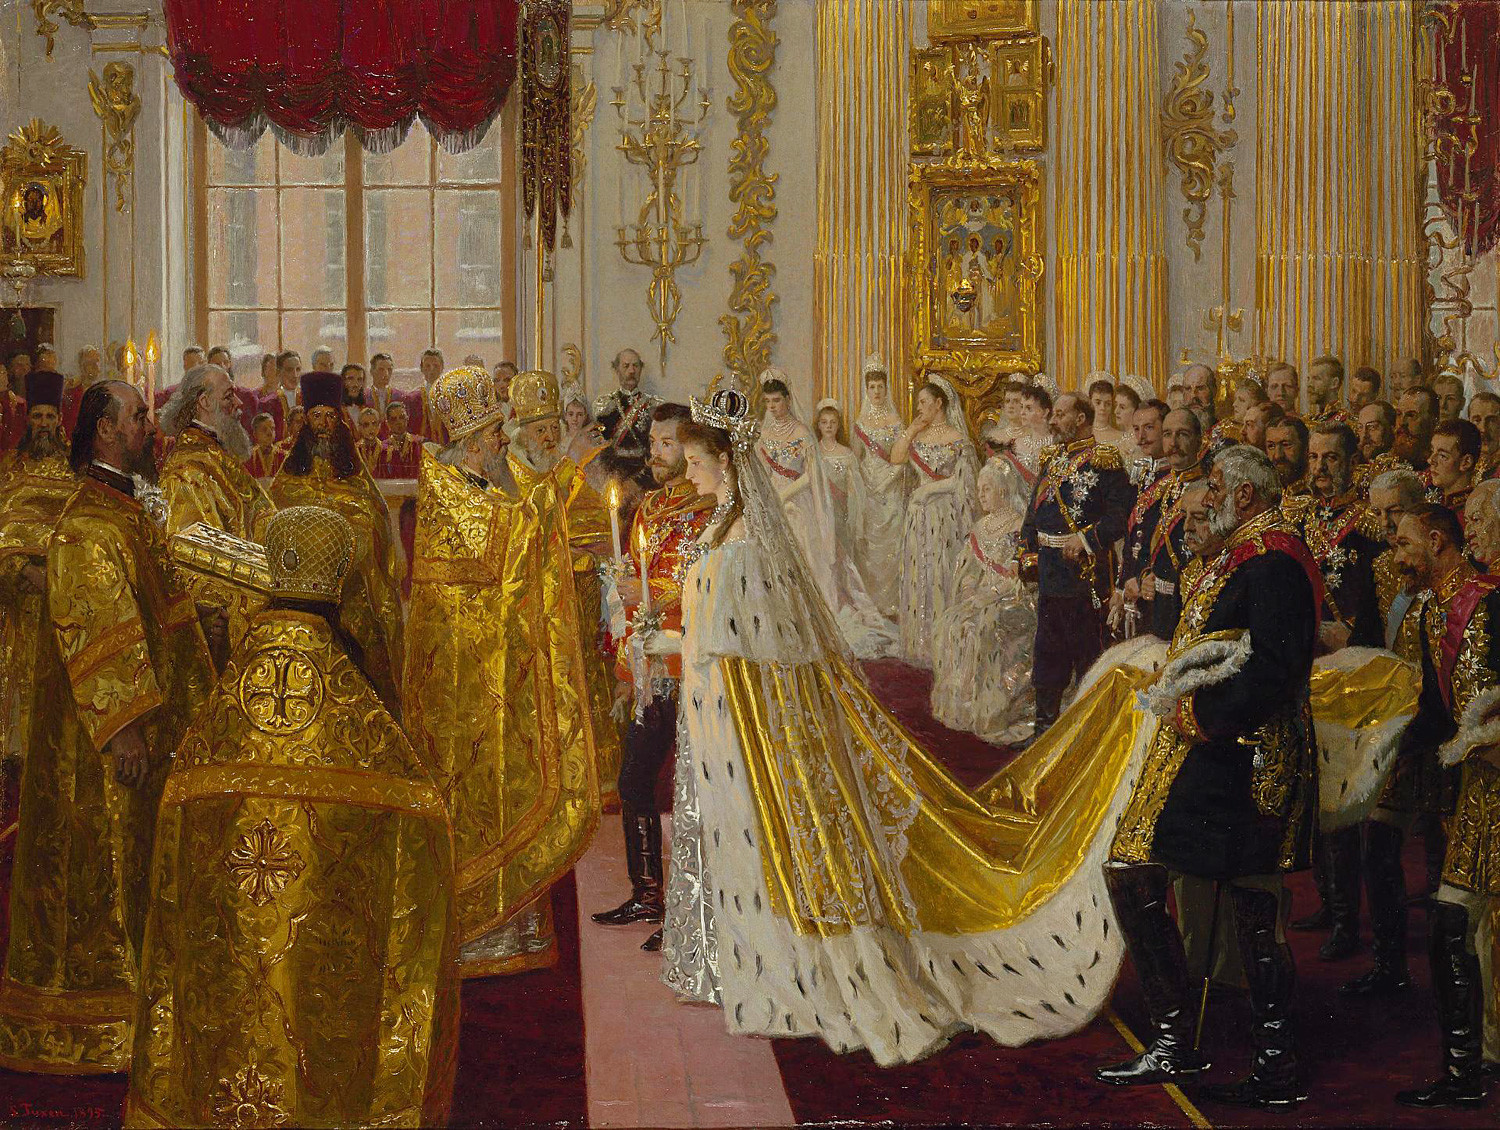 La boda de Nicolás II y Alexandra Fiódorovna.

